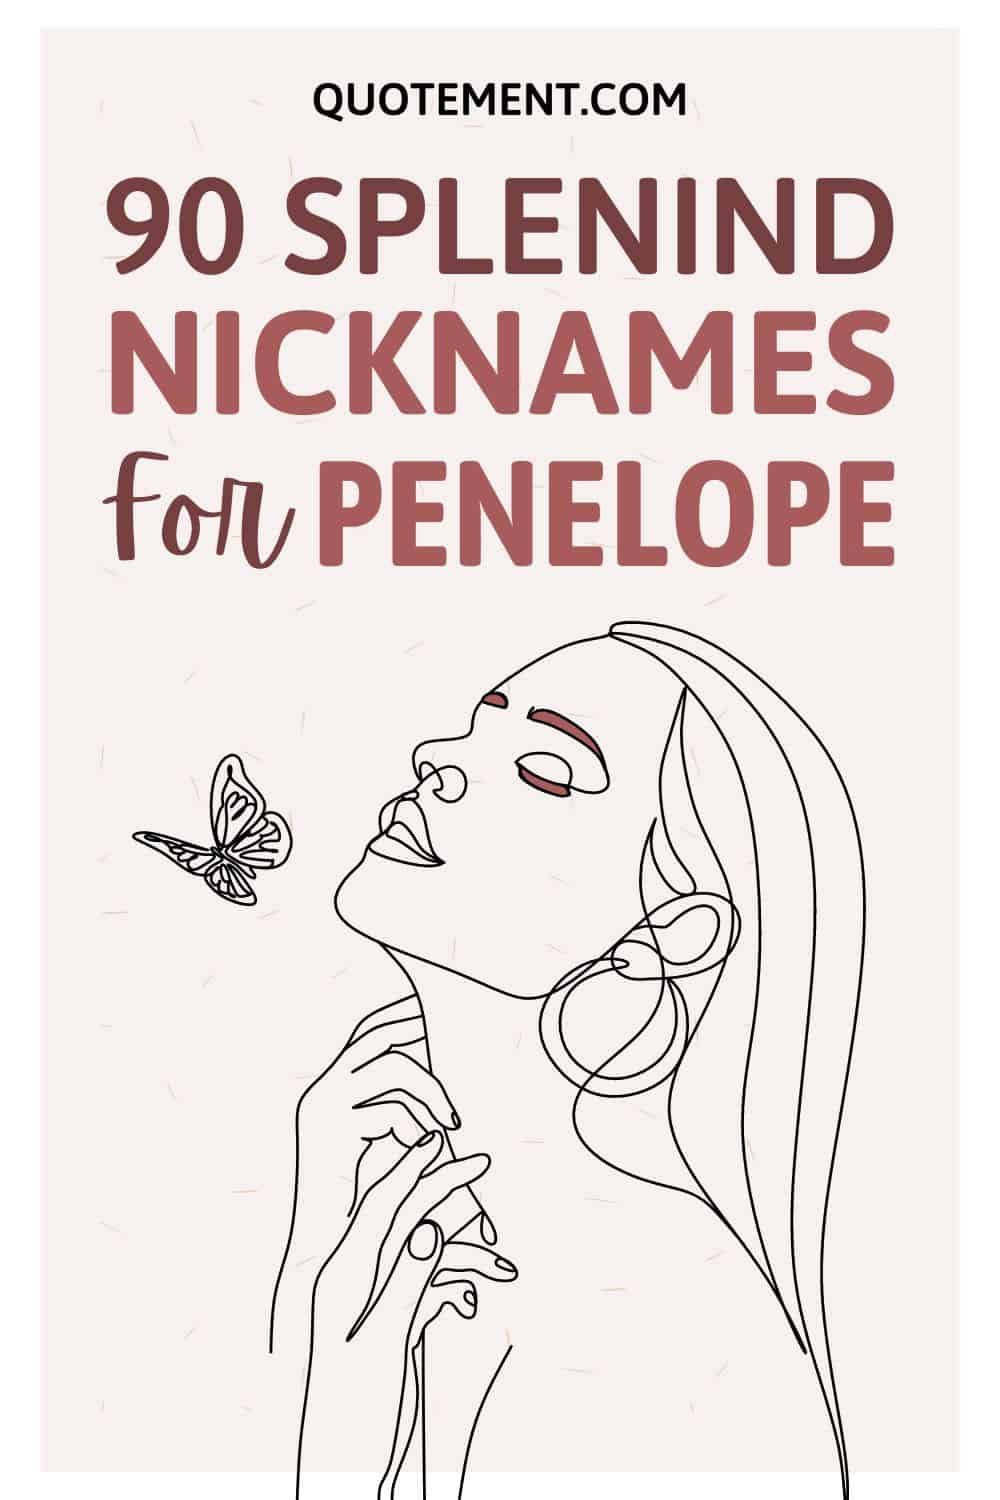 90 Splendid Nicknames For Penelope For A Dash Of Magic